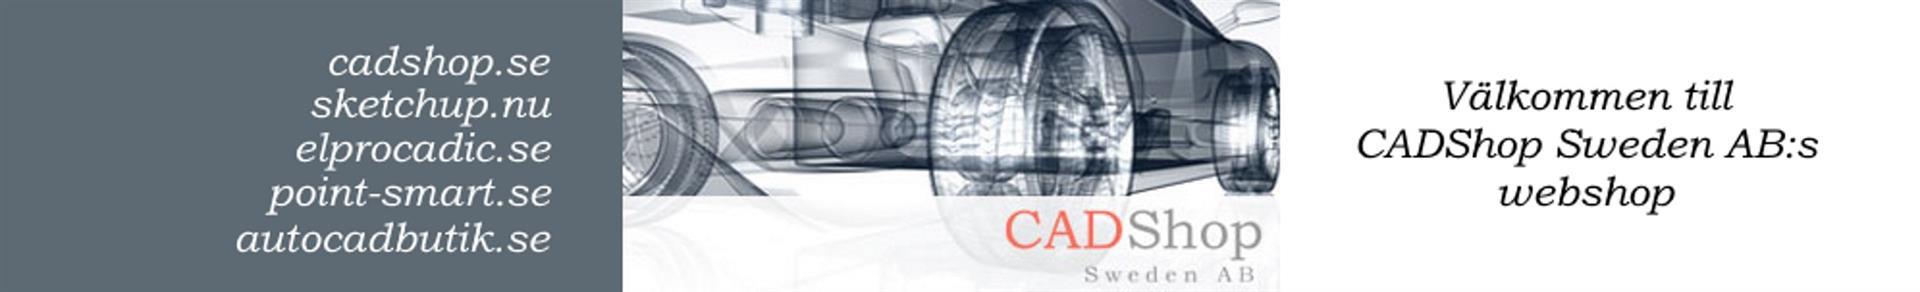 Välkommen till CADShops webshop med låga priser och snabb leverans